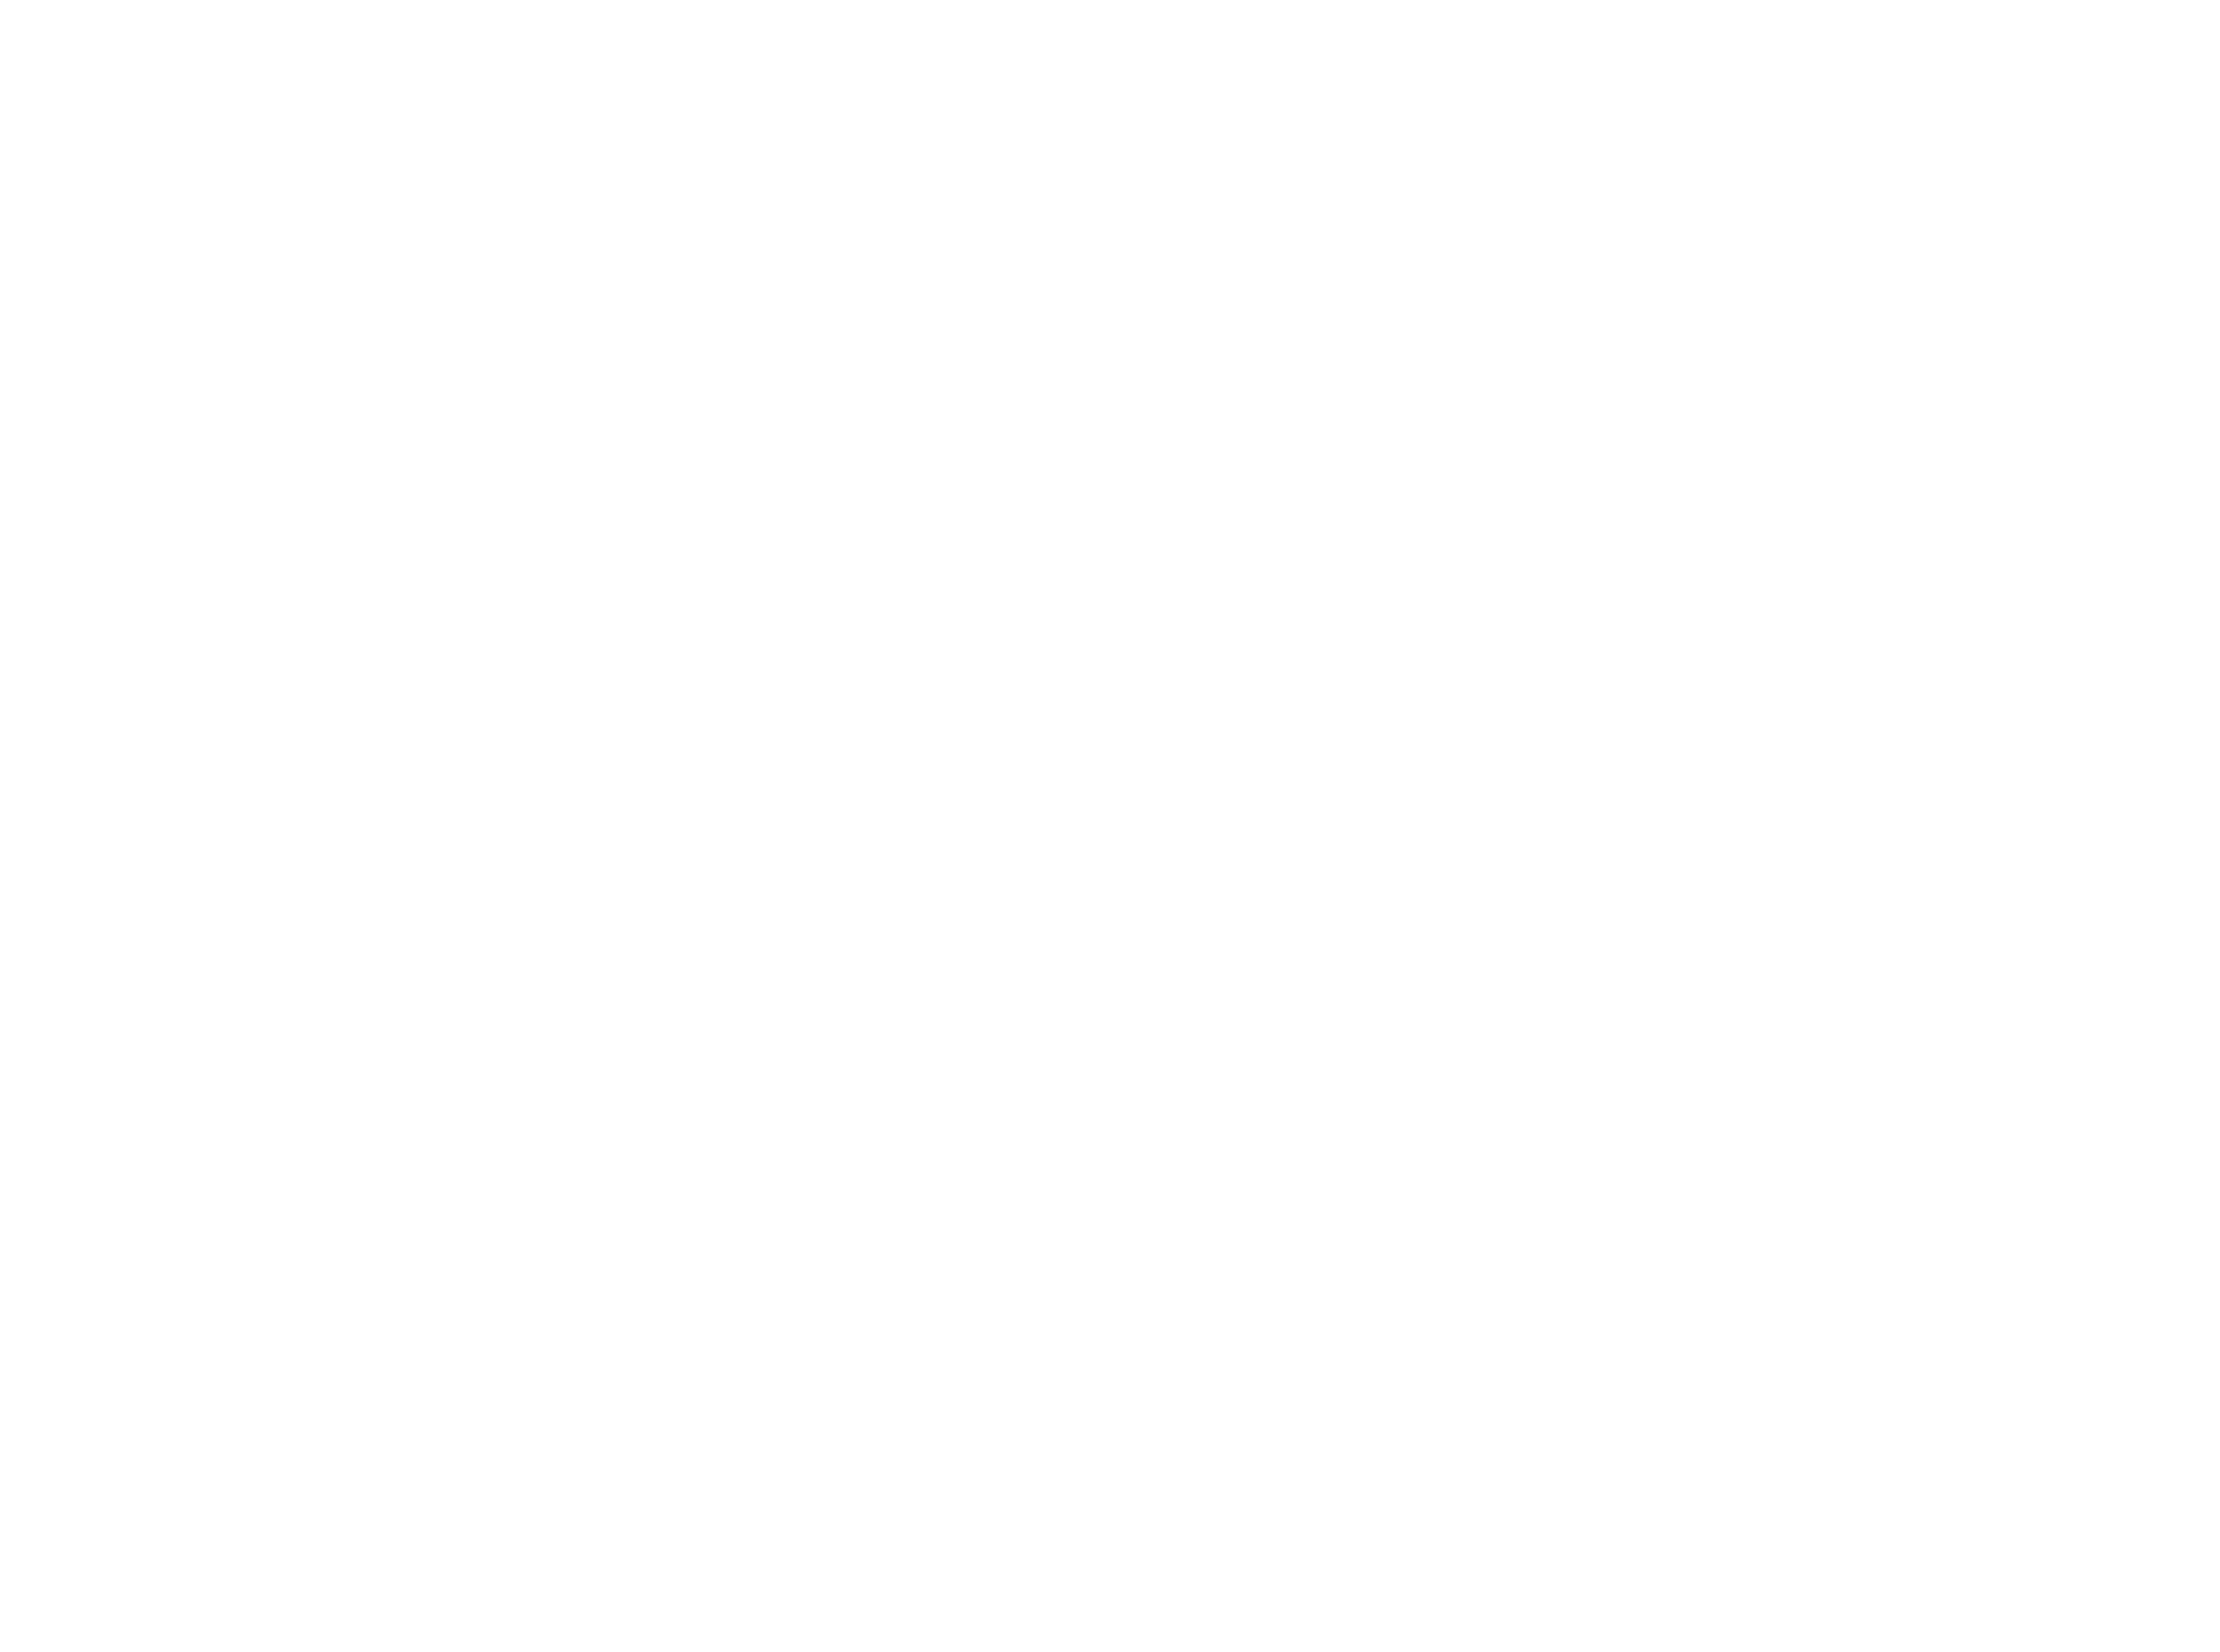 Spain borders